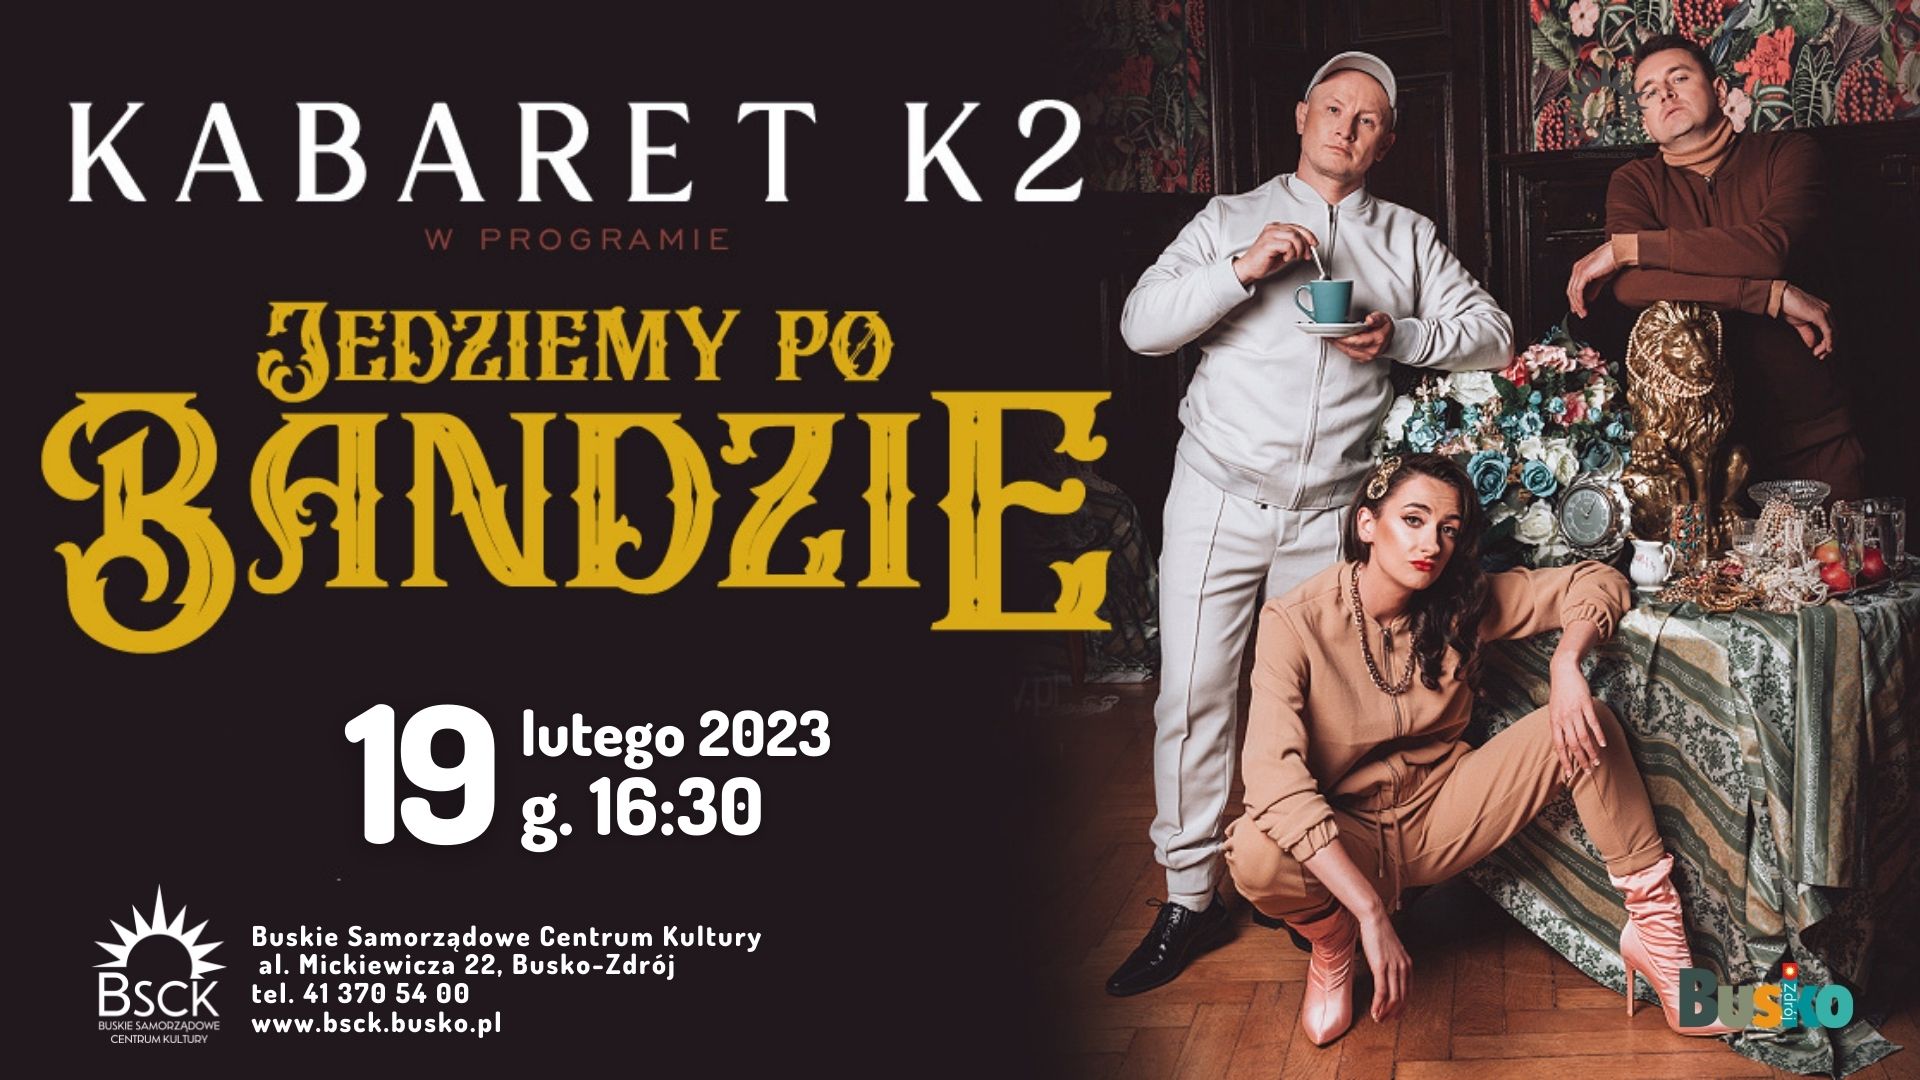 grafika promująca występ kabaretu K2, przedstawia trójkę artystów 